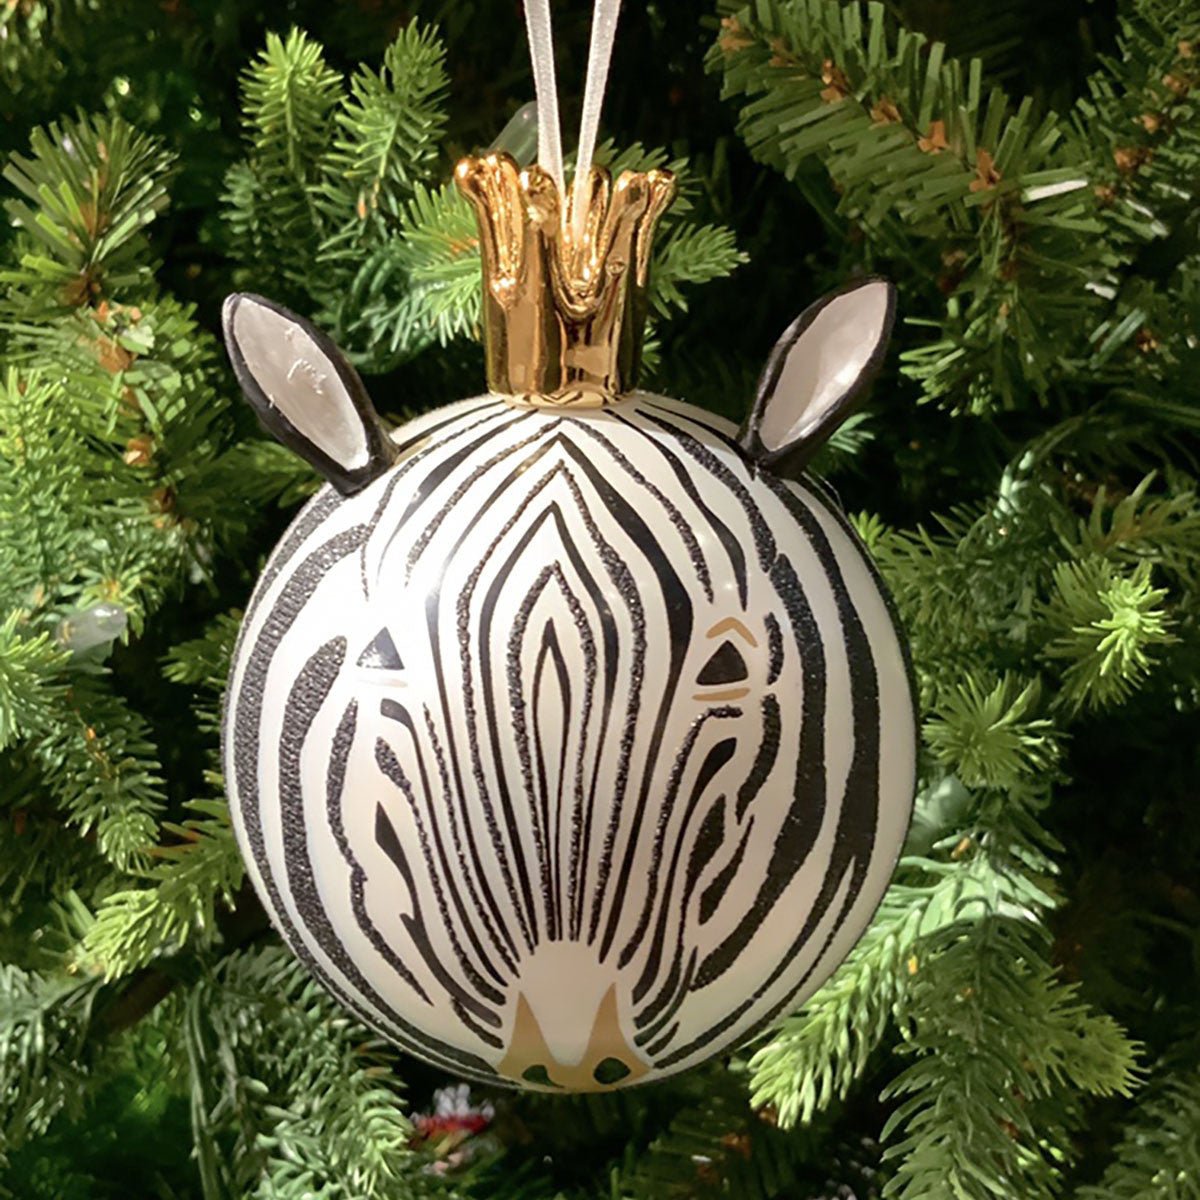 Zoo Bright Ornament Black & White Zebra